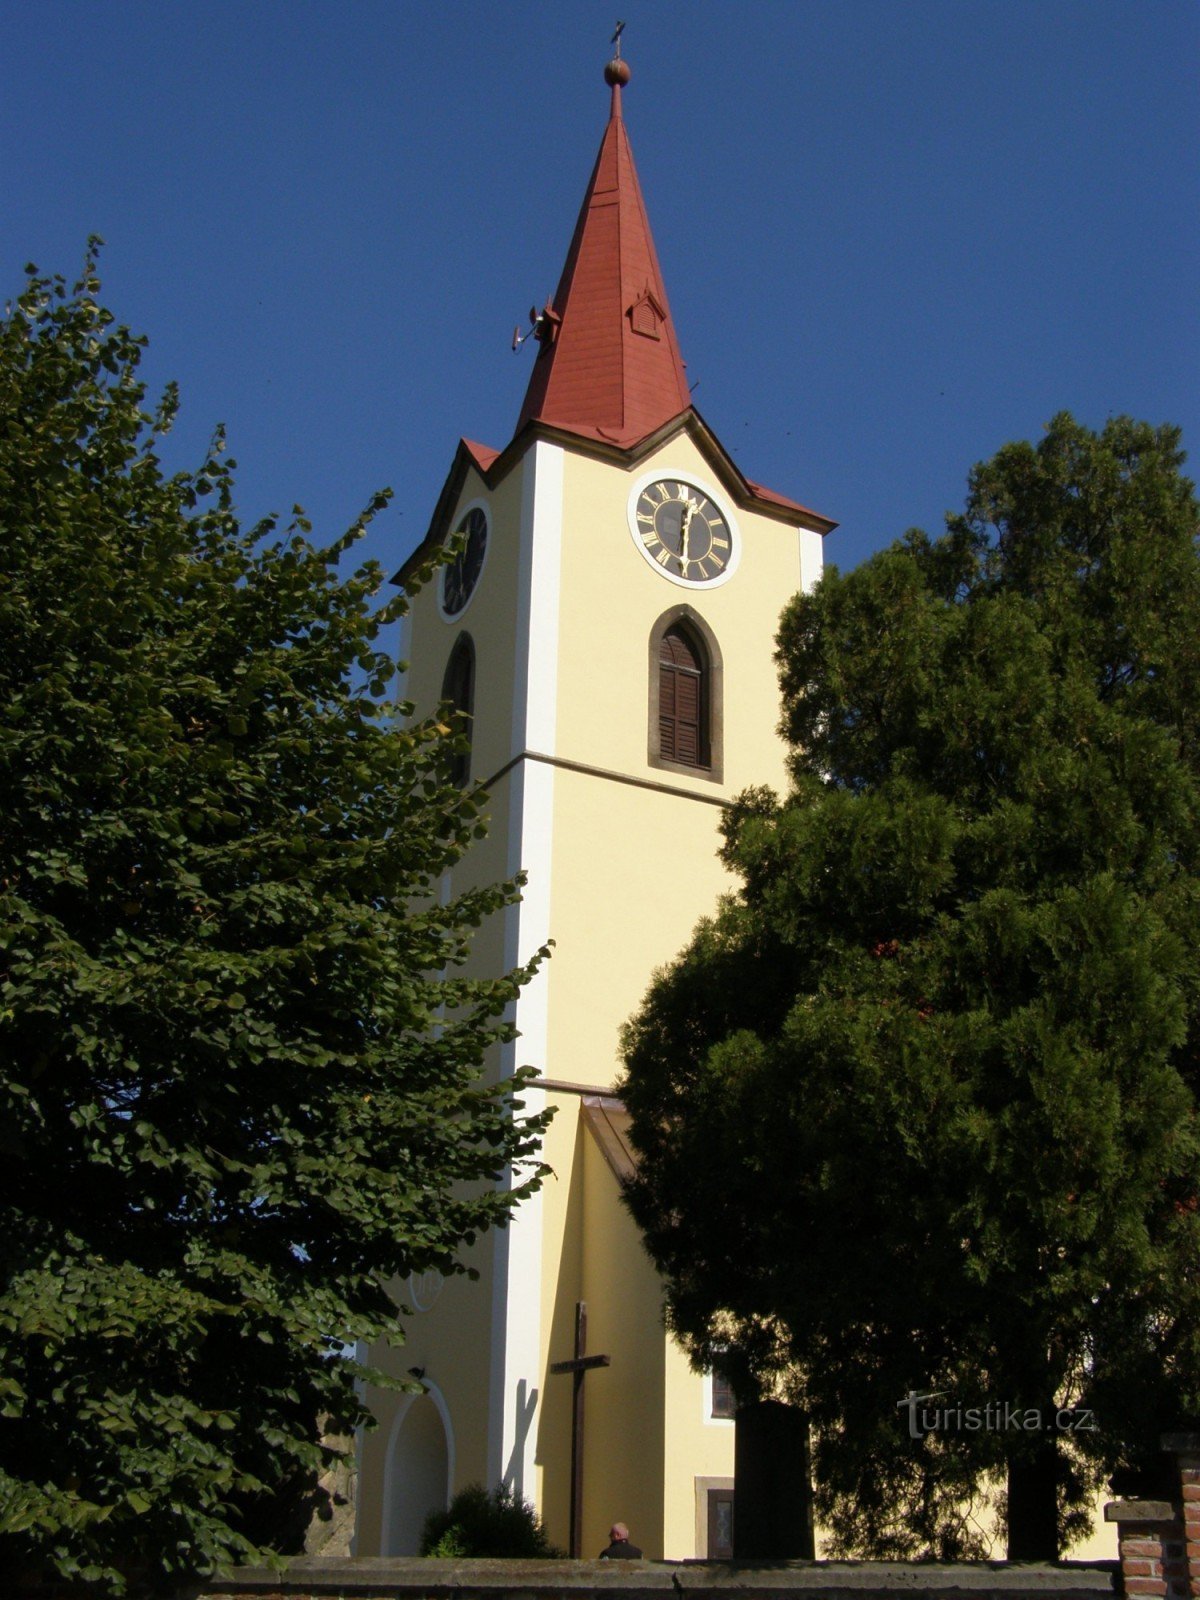 Jasenná - Chiesa di San Giorgio